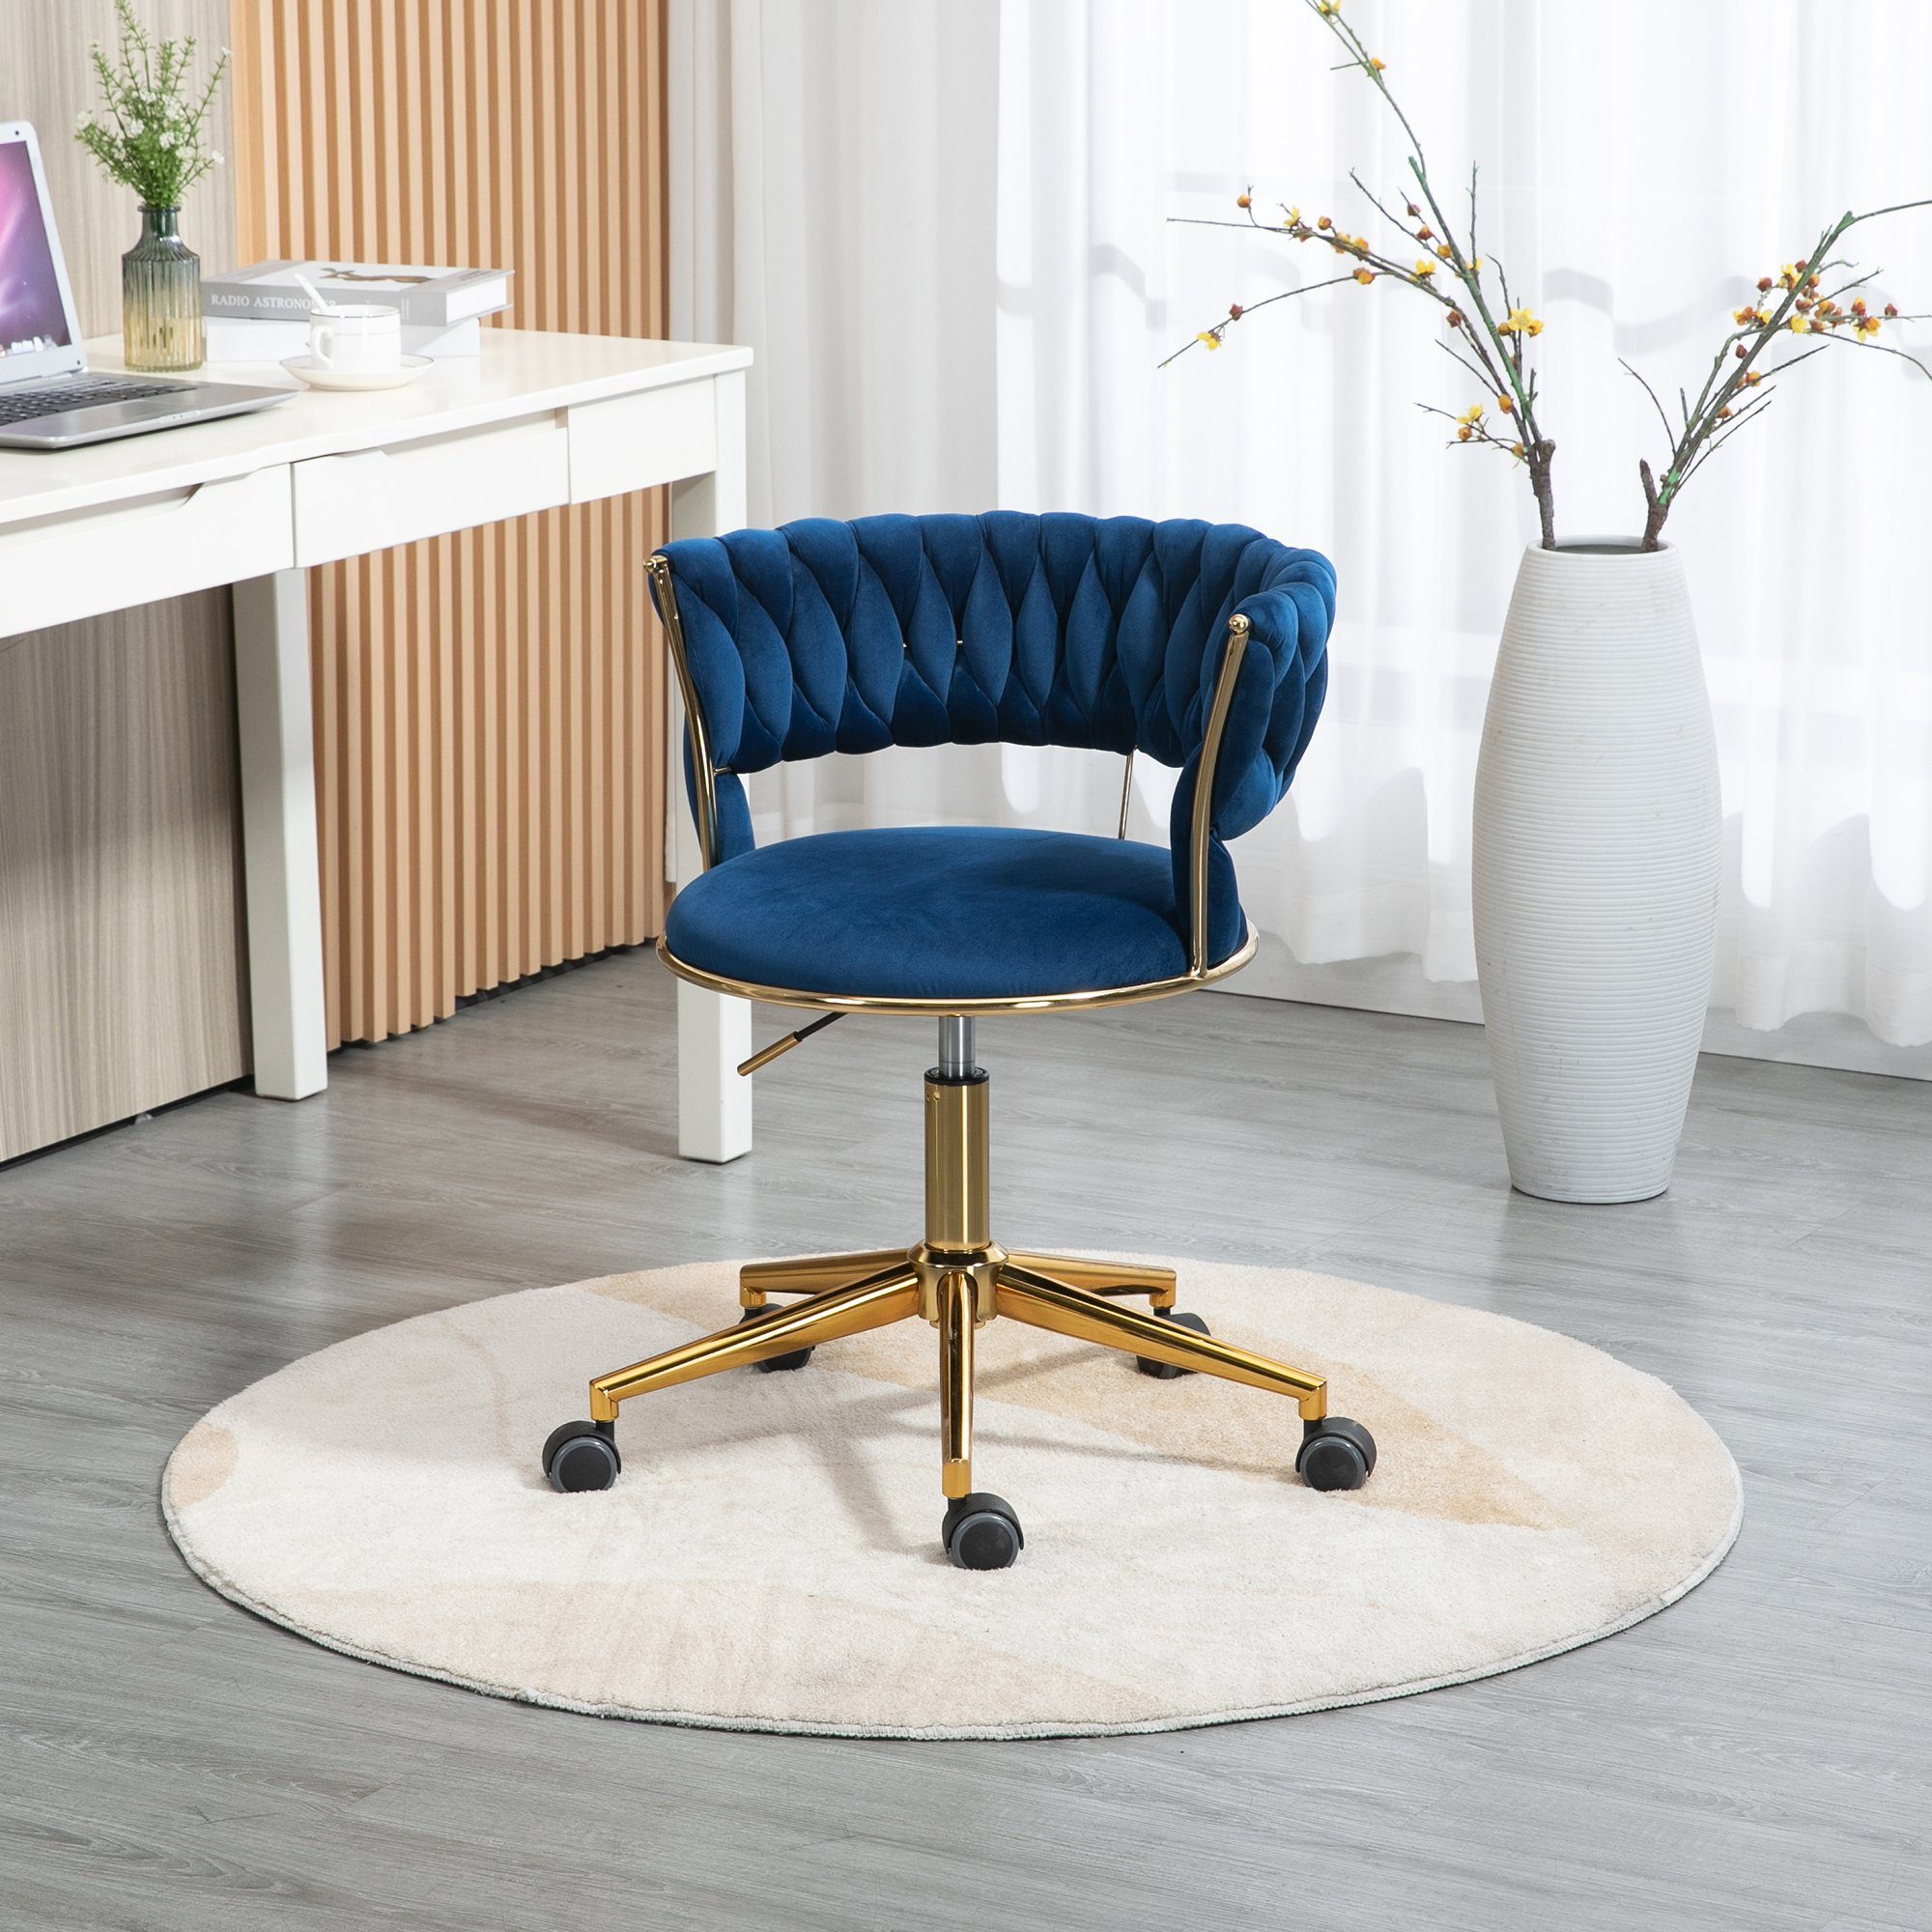 Ulife Drehstuhl 360 ° Rollenstuhl mit goldfarbigen Beinen, höhenverstellbar Blau